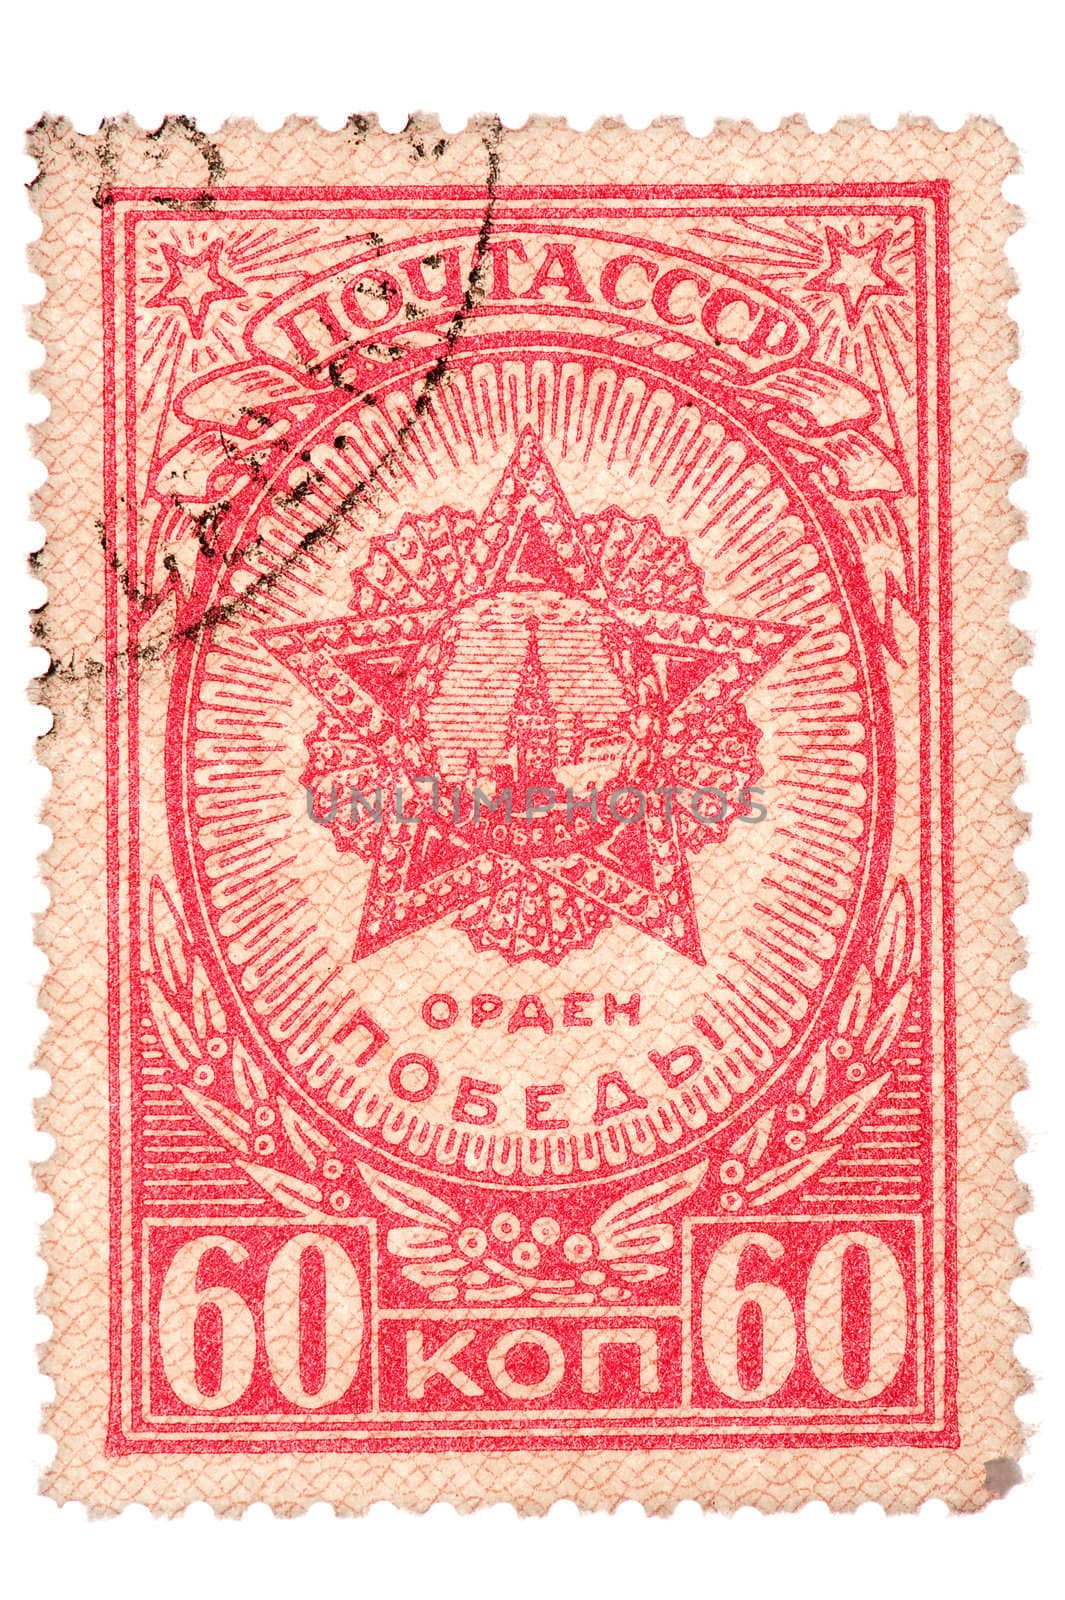 object on white - Older postage stamp USSR